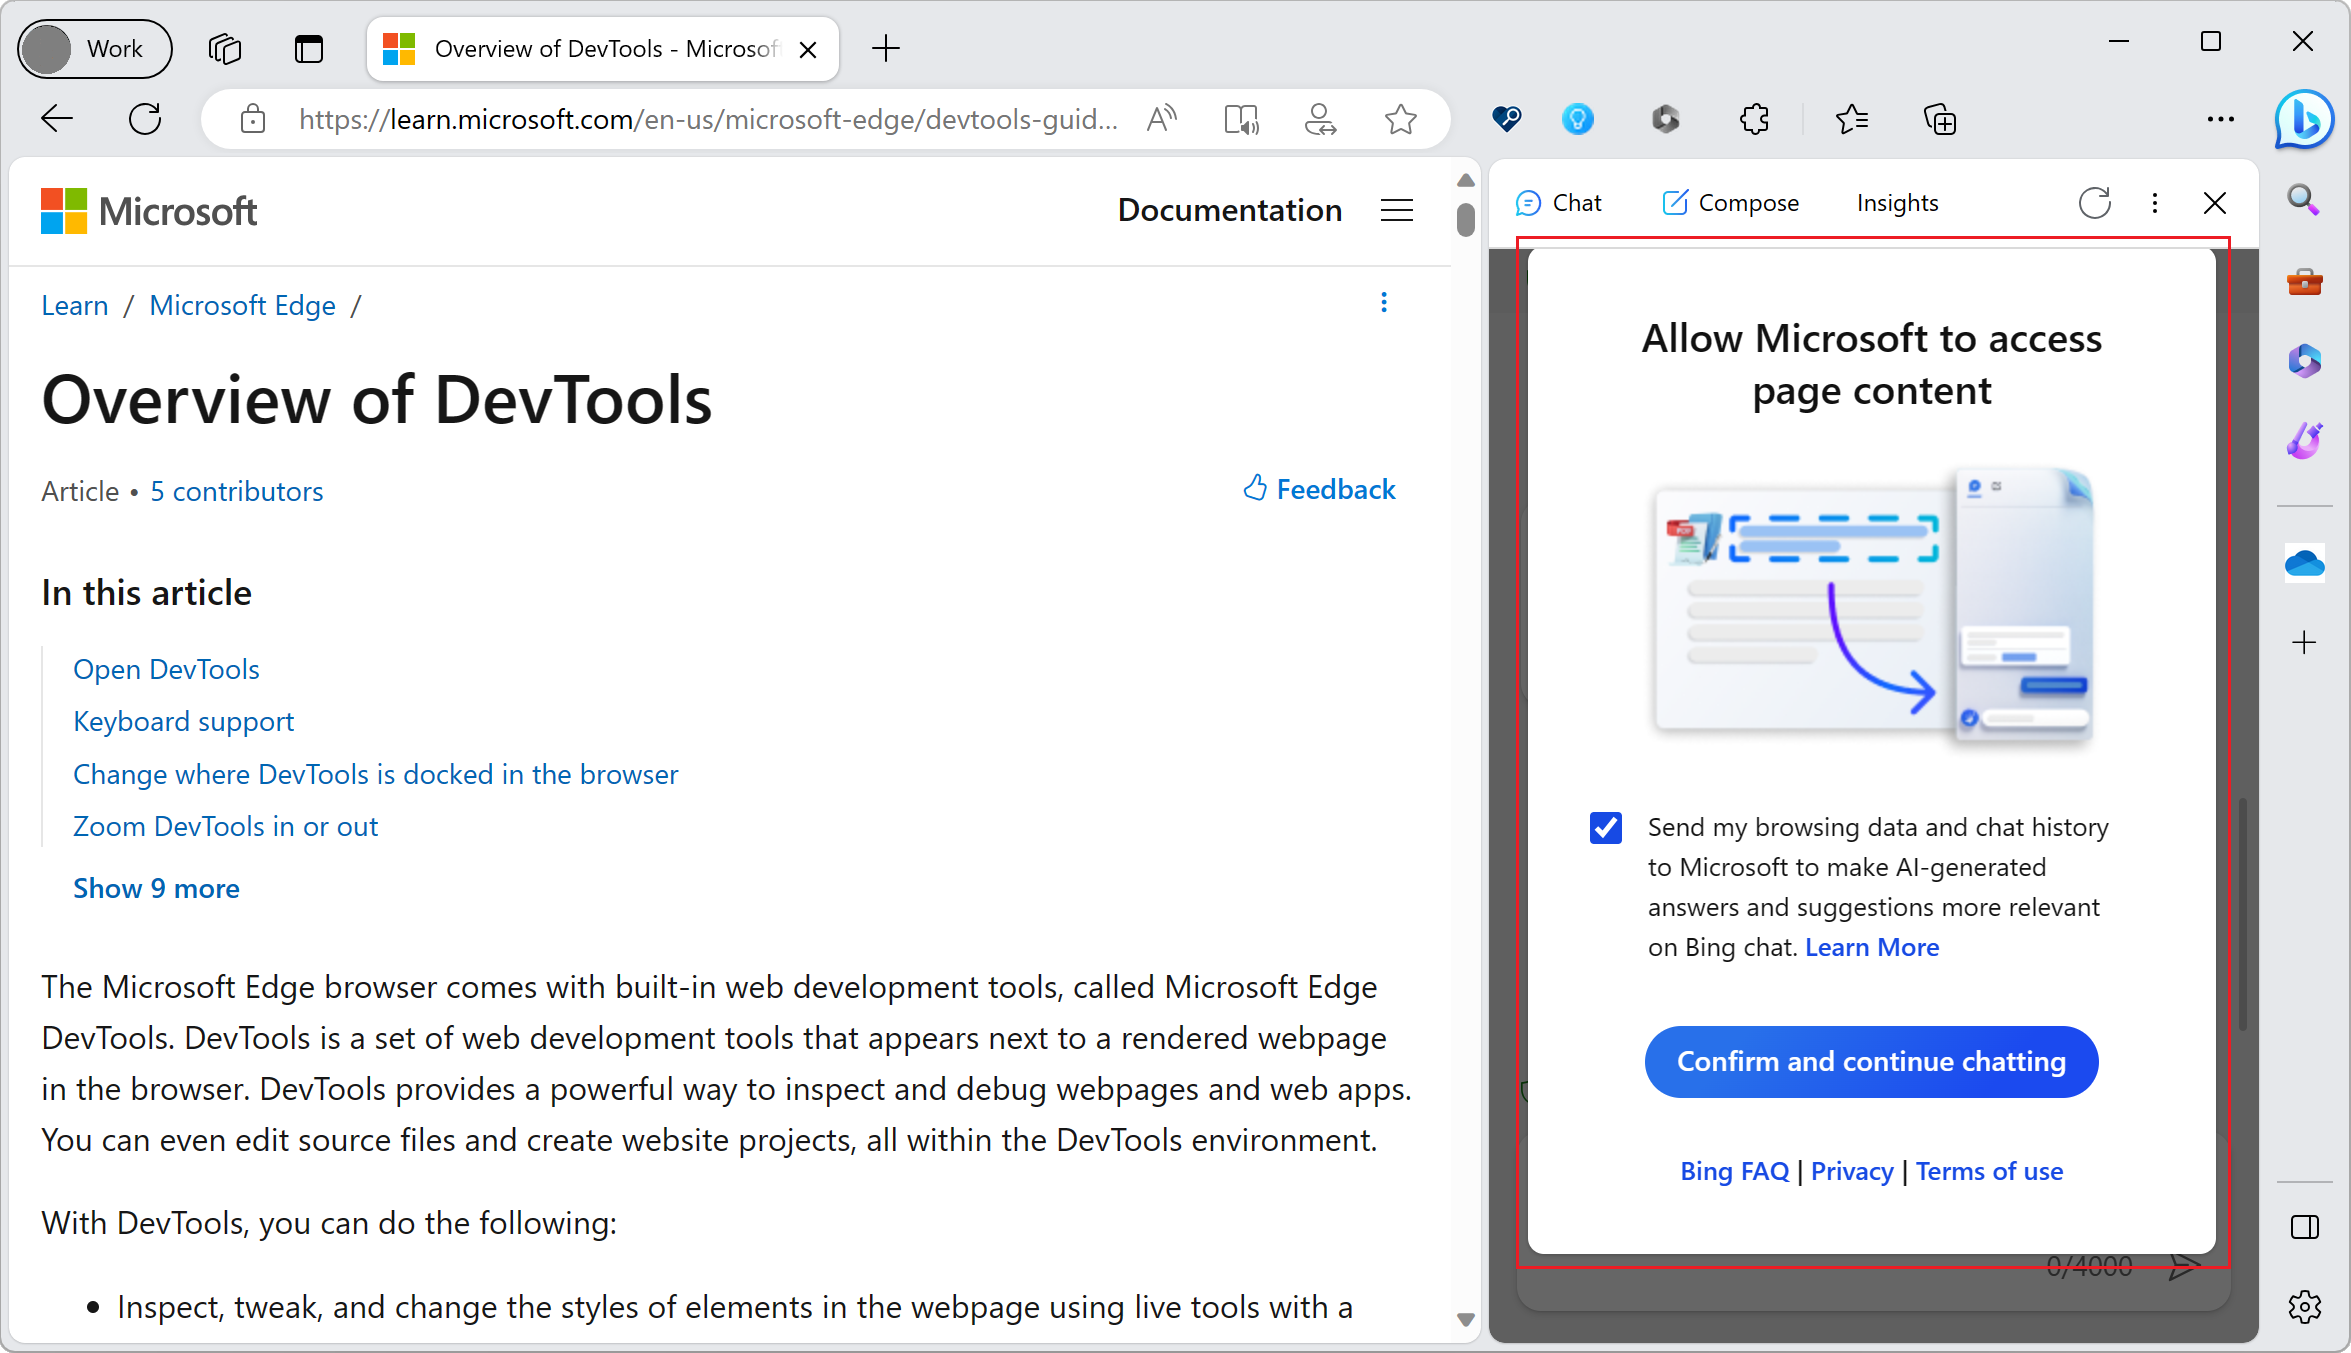 Copilot запрашивает согласие на доступ к содержимому страницы в Microsoft Edge